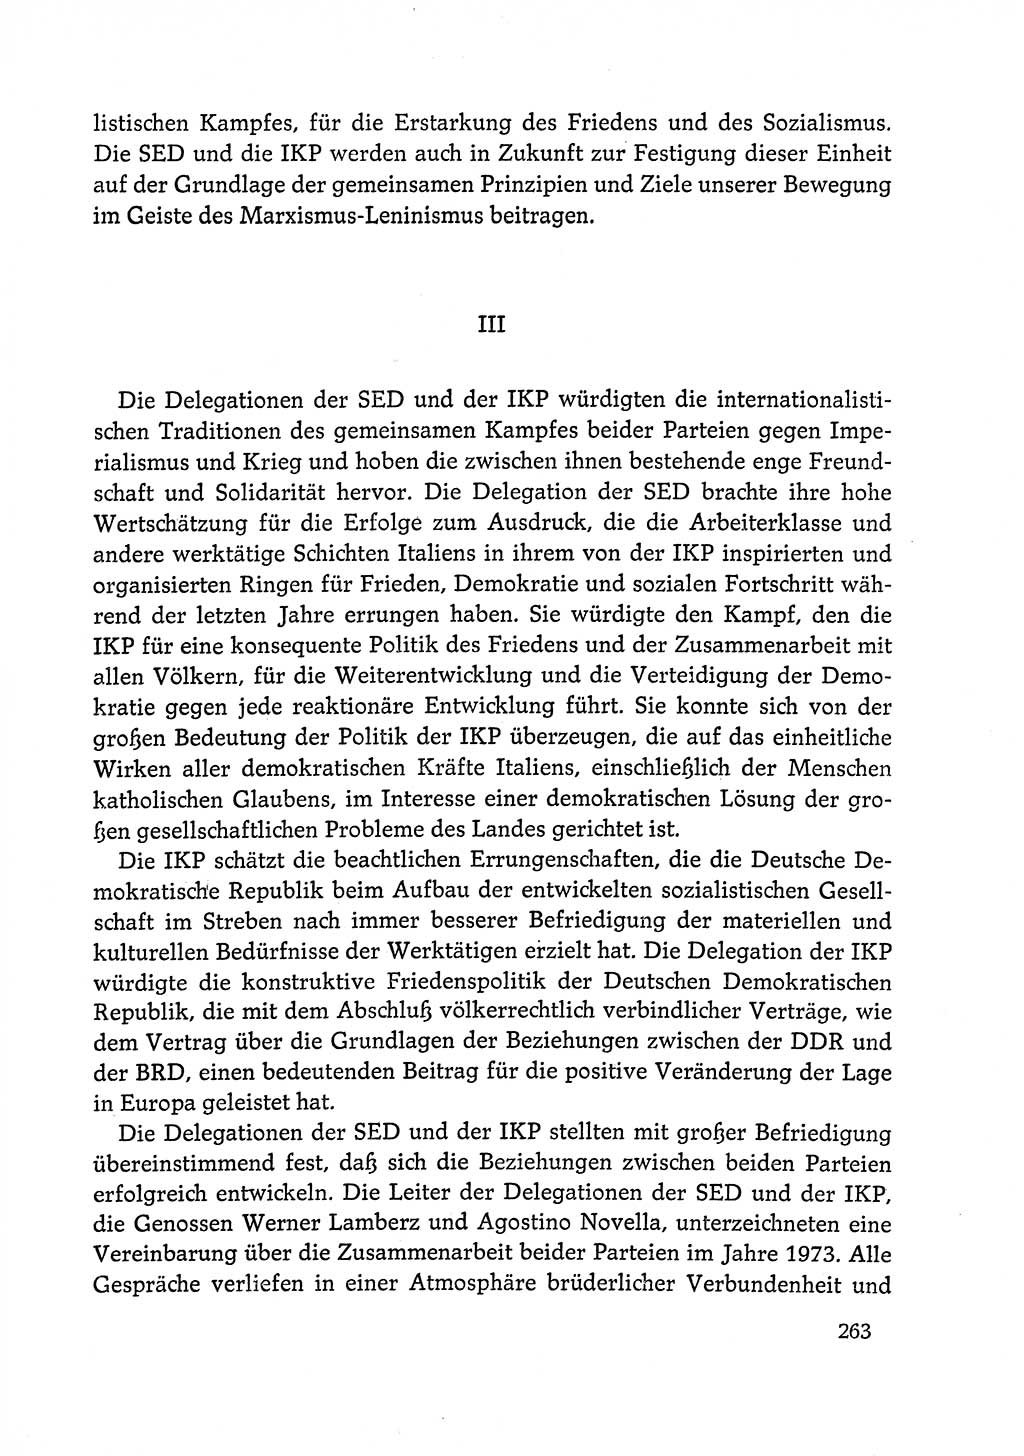 Dokumente der Sozialistischen Einheitspartei Deutschlands (SED) [Deutsche Demokratische Republik (DDR)] 1972-1973, Seite 263 (Dok. SED DDR 1972-1973, S. 263)